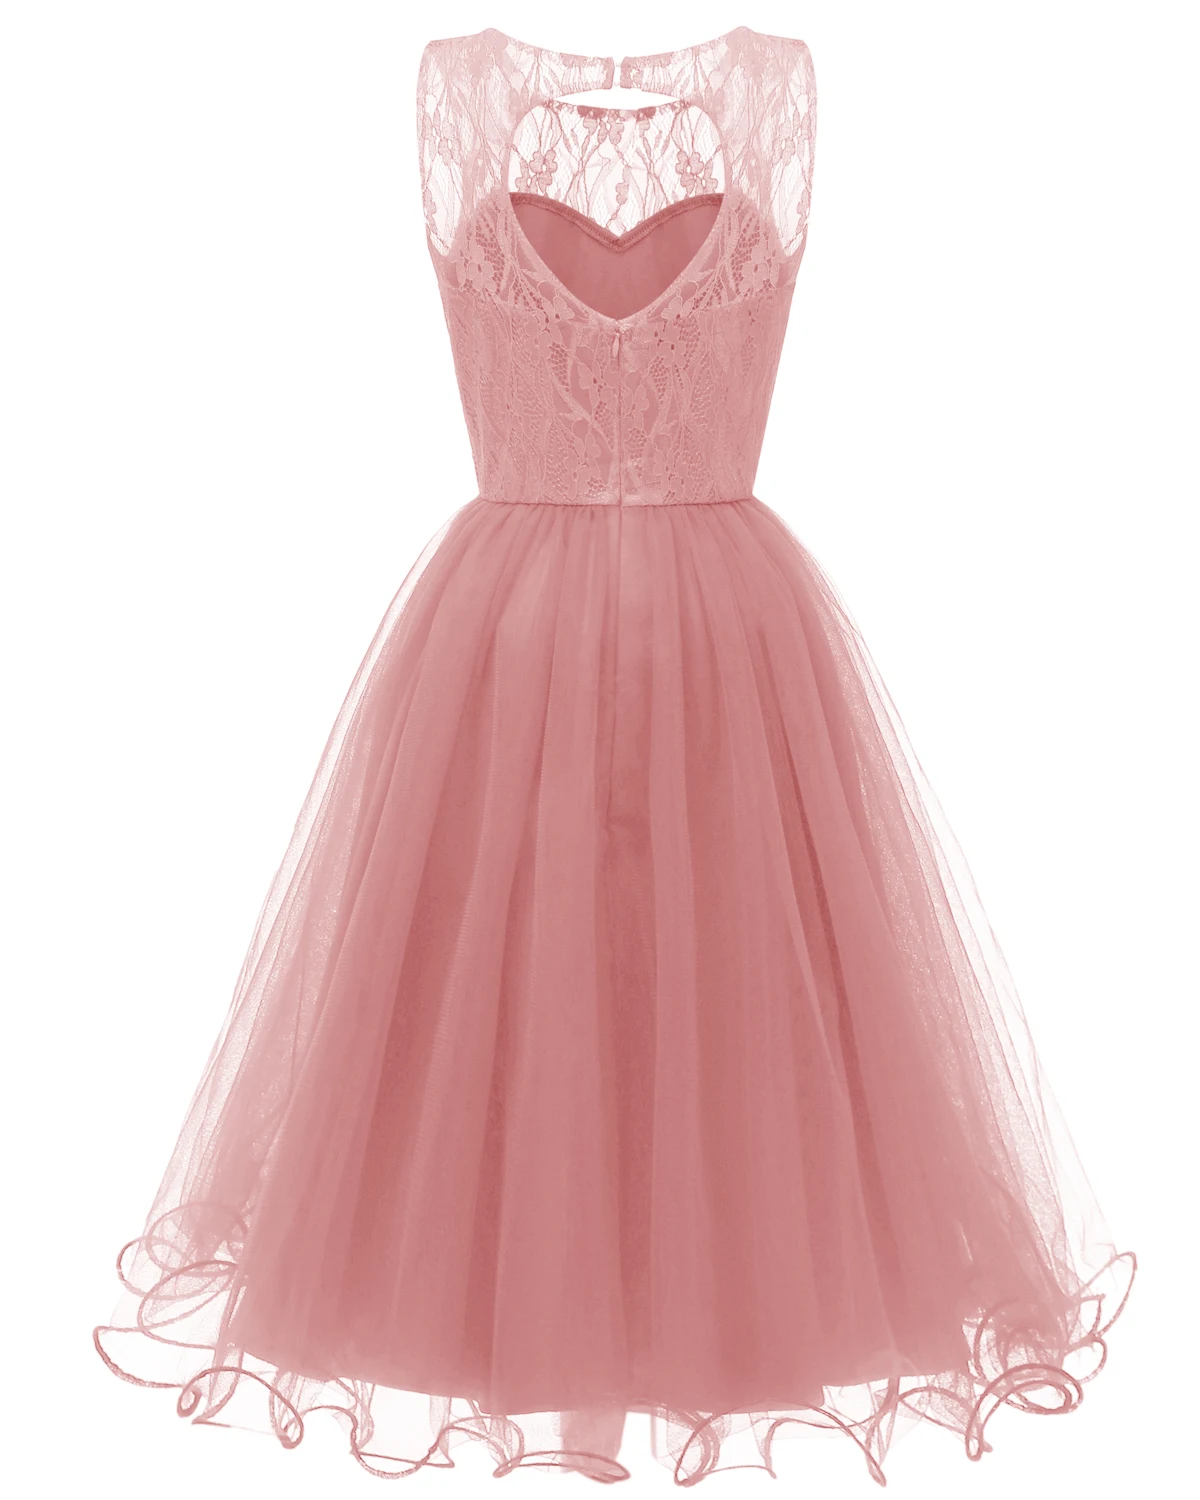 Eveningdress Новое ажурное кружевное винтажное платье-американка осень-зима коктейльное платье Коллекция темно-синий розовый винный красный